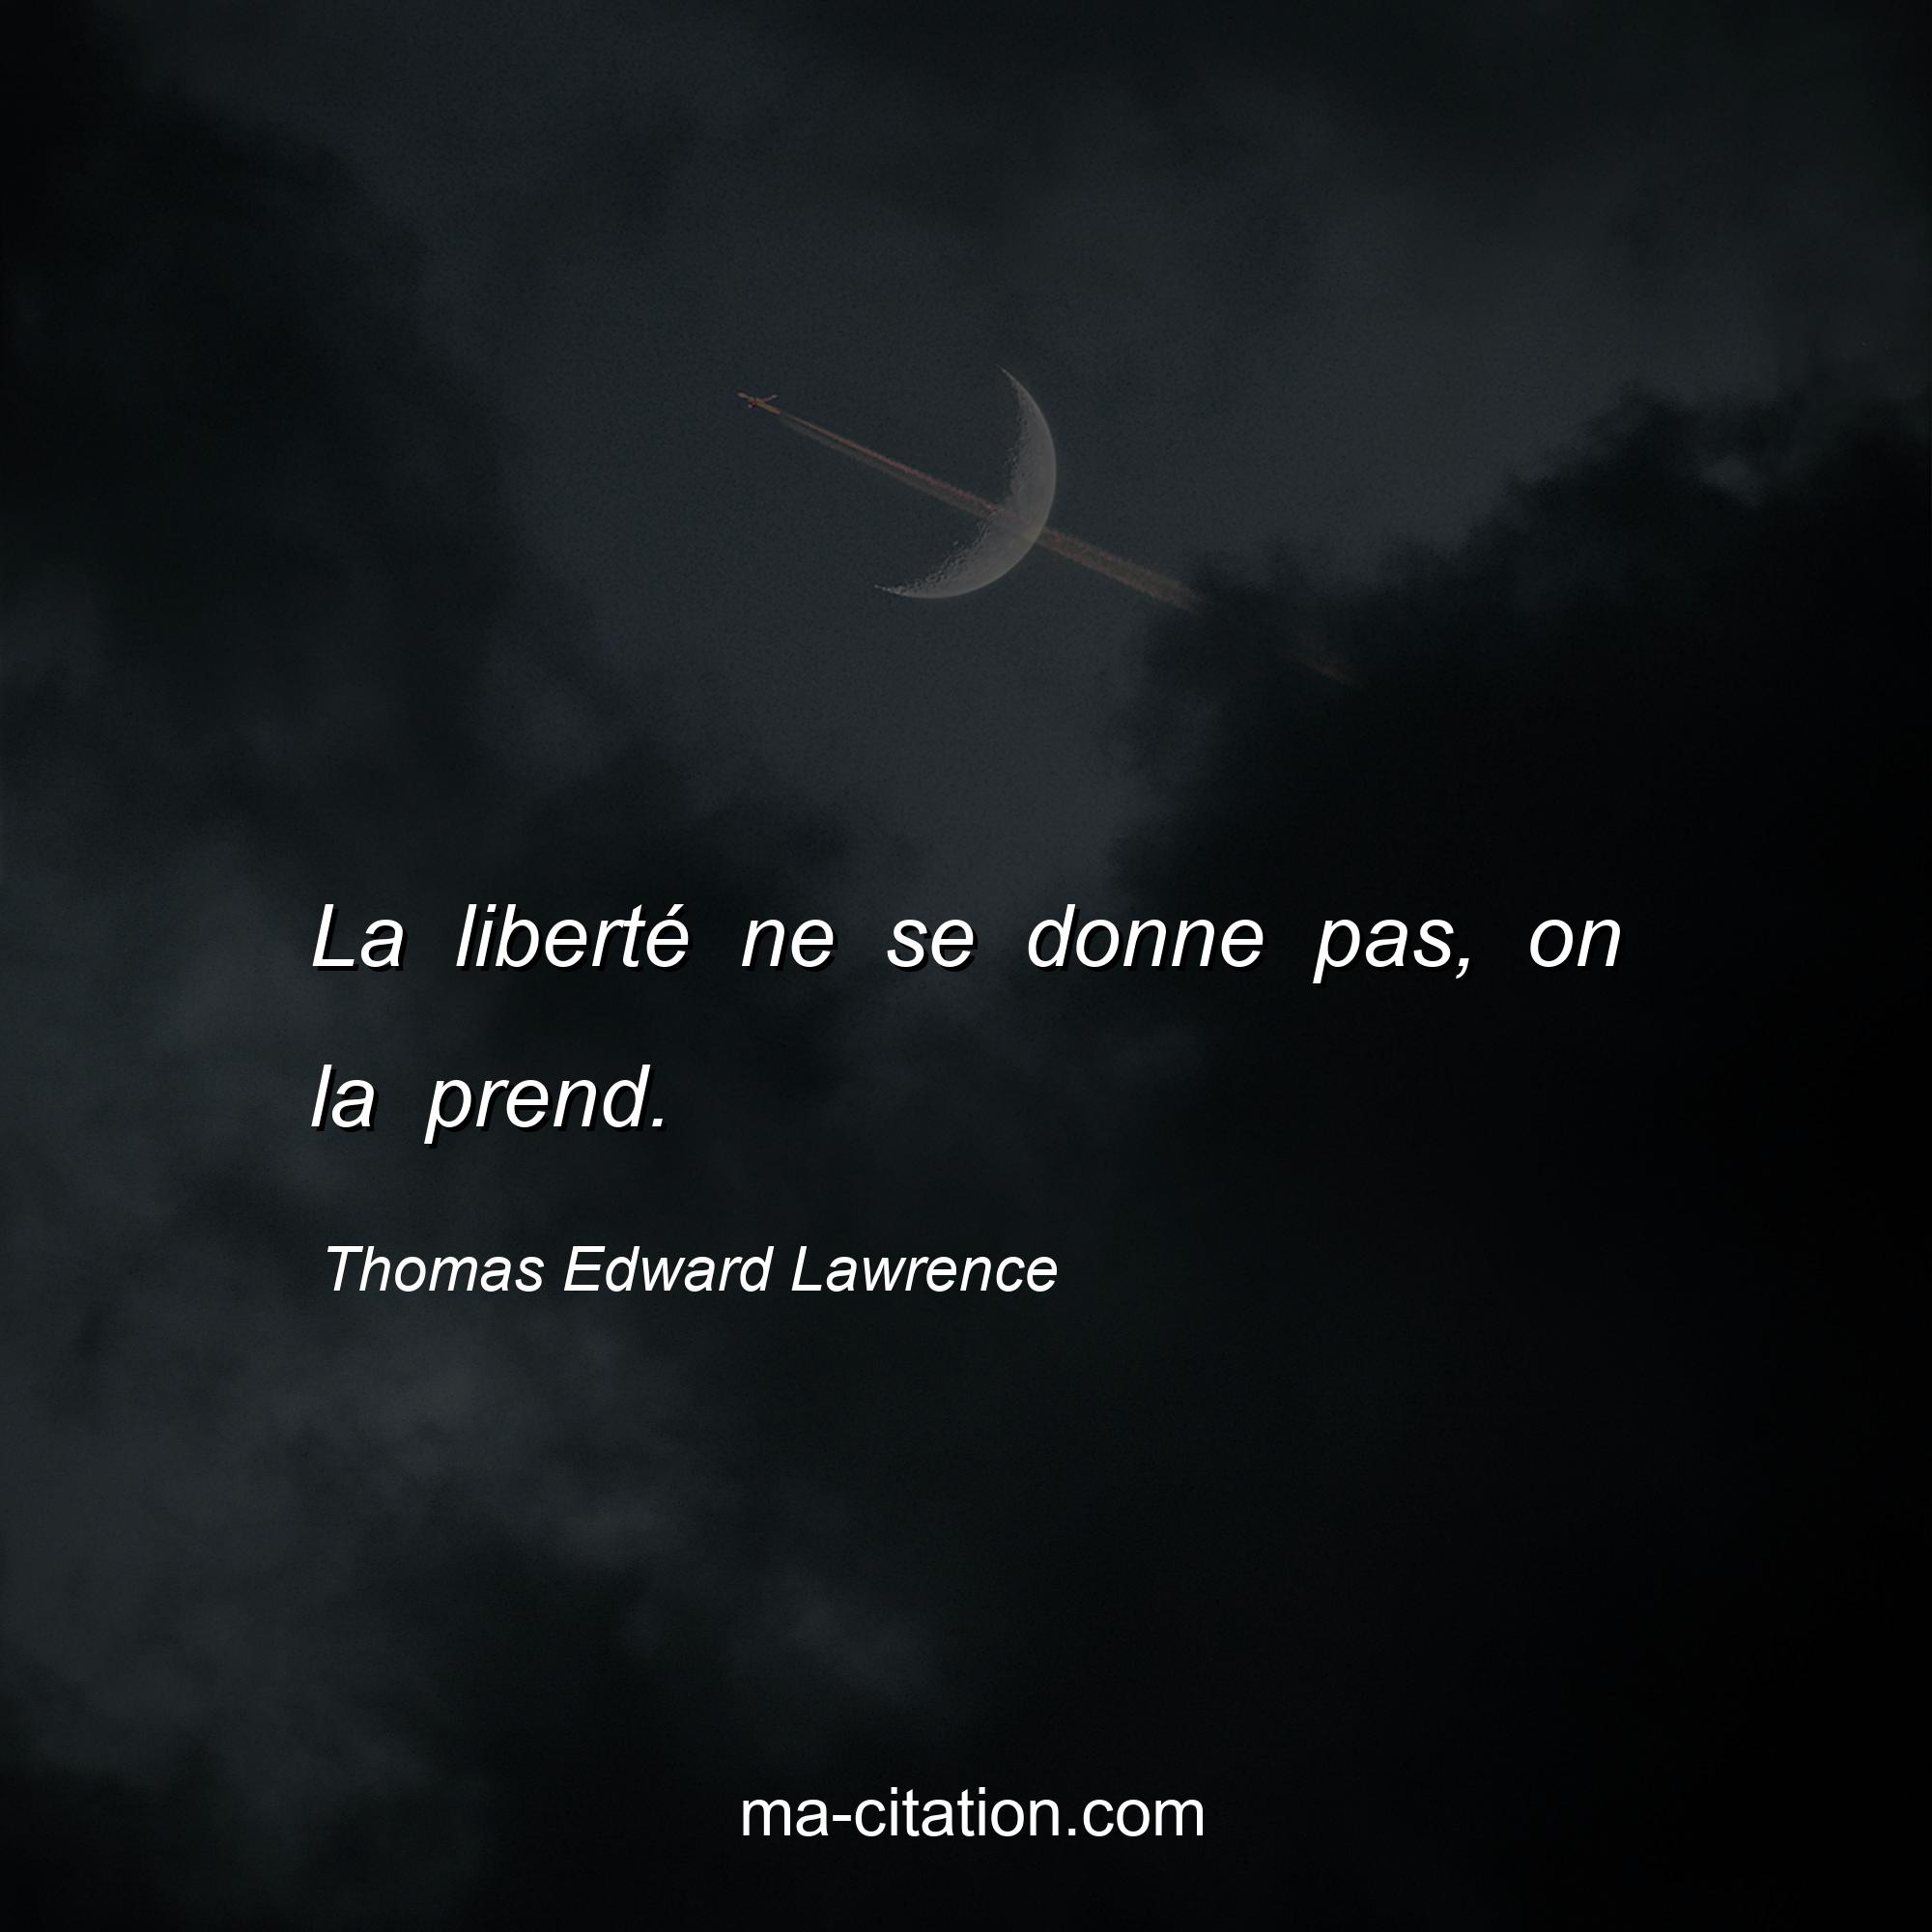 Thomas Edward Lawrence : La liberté ne se donne pas, on la prend.